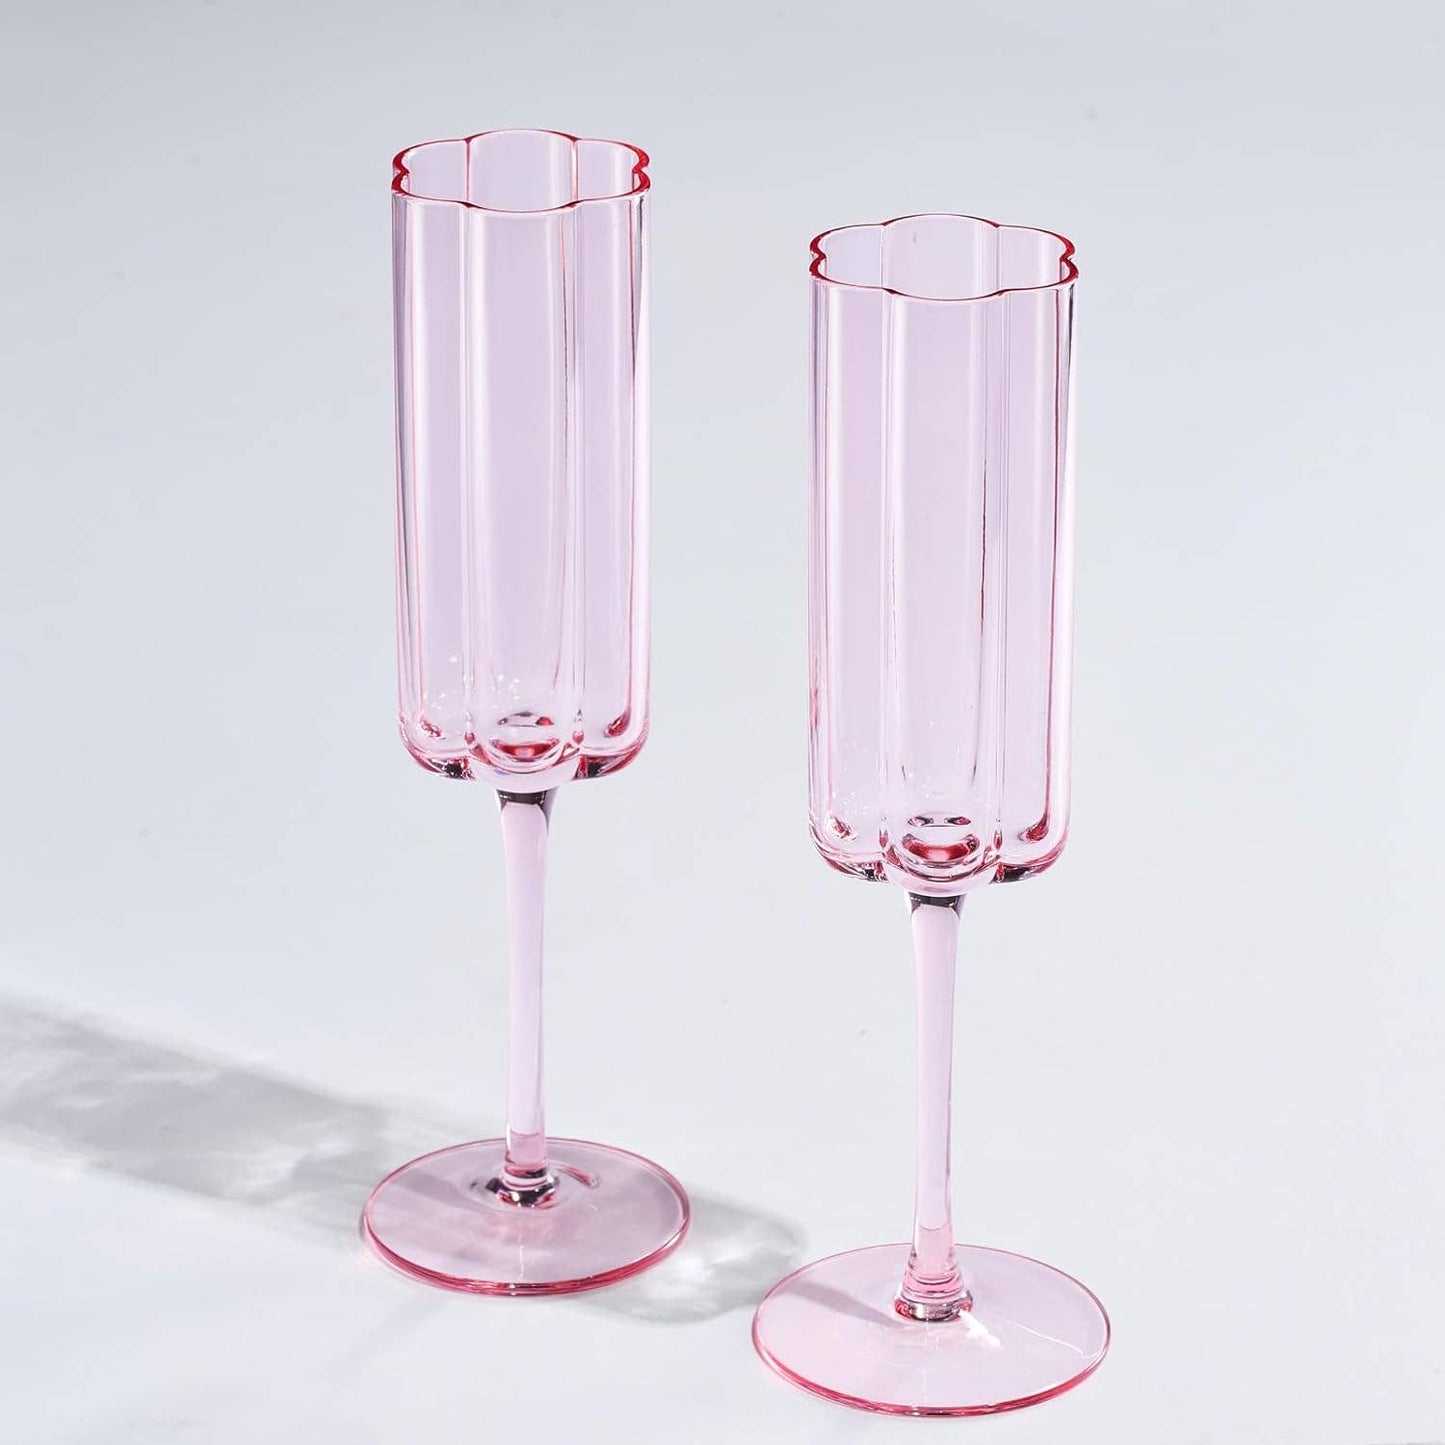 Set of 2 Flower Vintage Champagne Flute Glassware - 7.4 oz